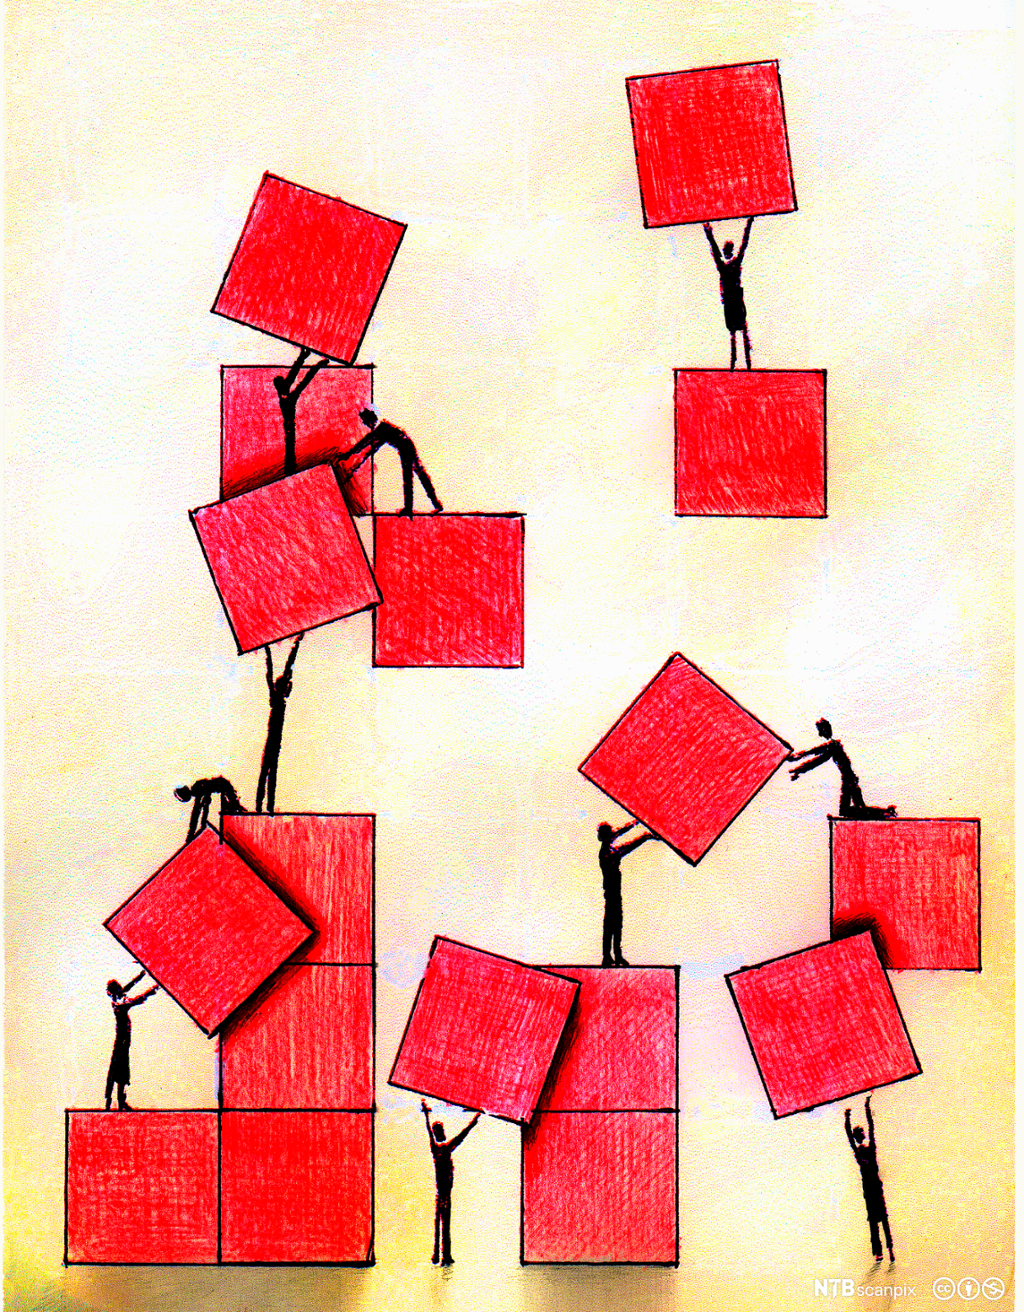 Mennesker flytter på røde klosser. Illustrasjon.